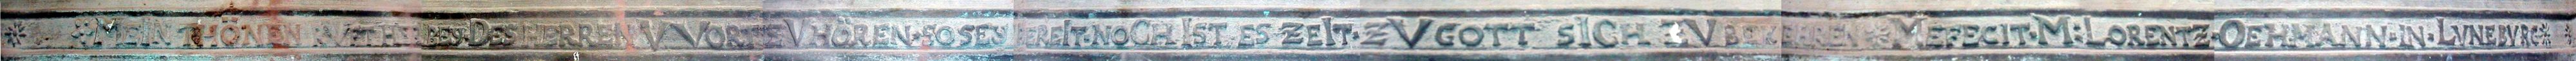 Inschrift auf der Schulter der Glocke von 1735